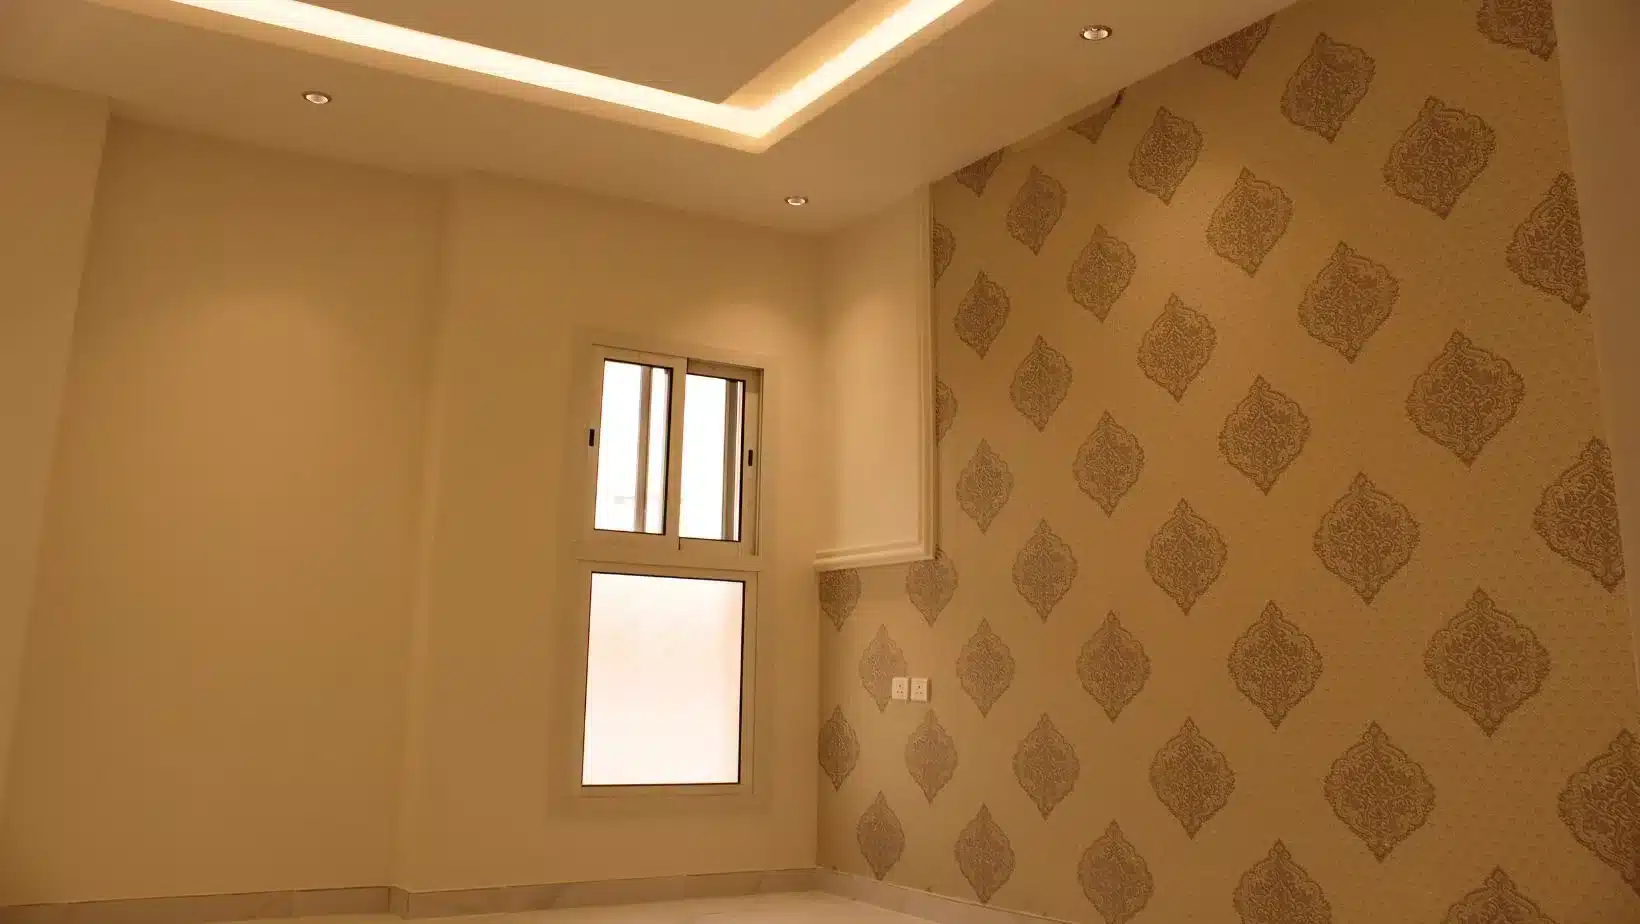 شقق التحلية للإيجار بالعليا الرياض. Tahlia apartments for rent in Olaya, Riyadh.